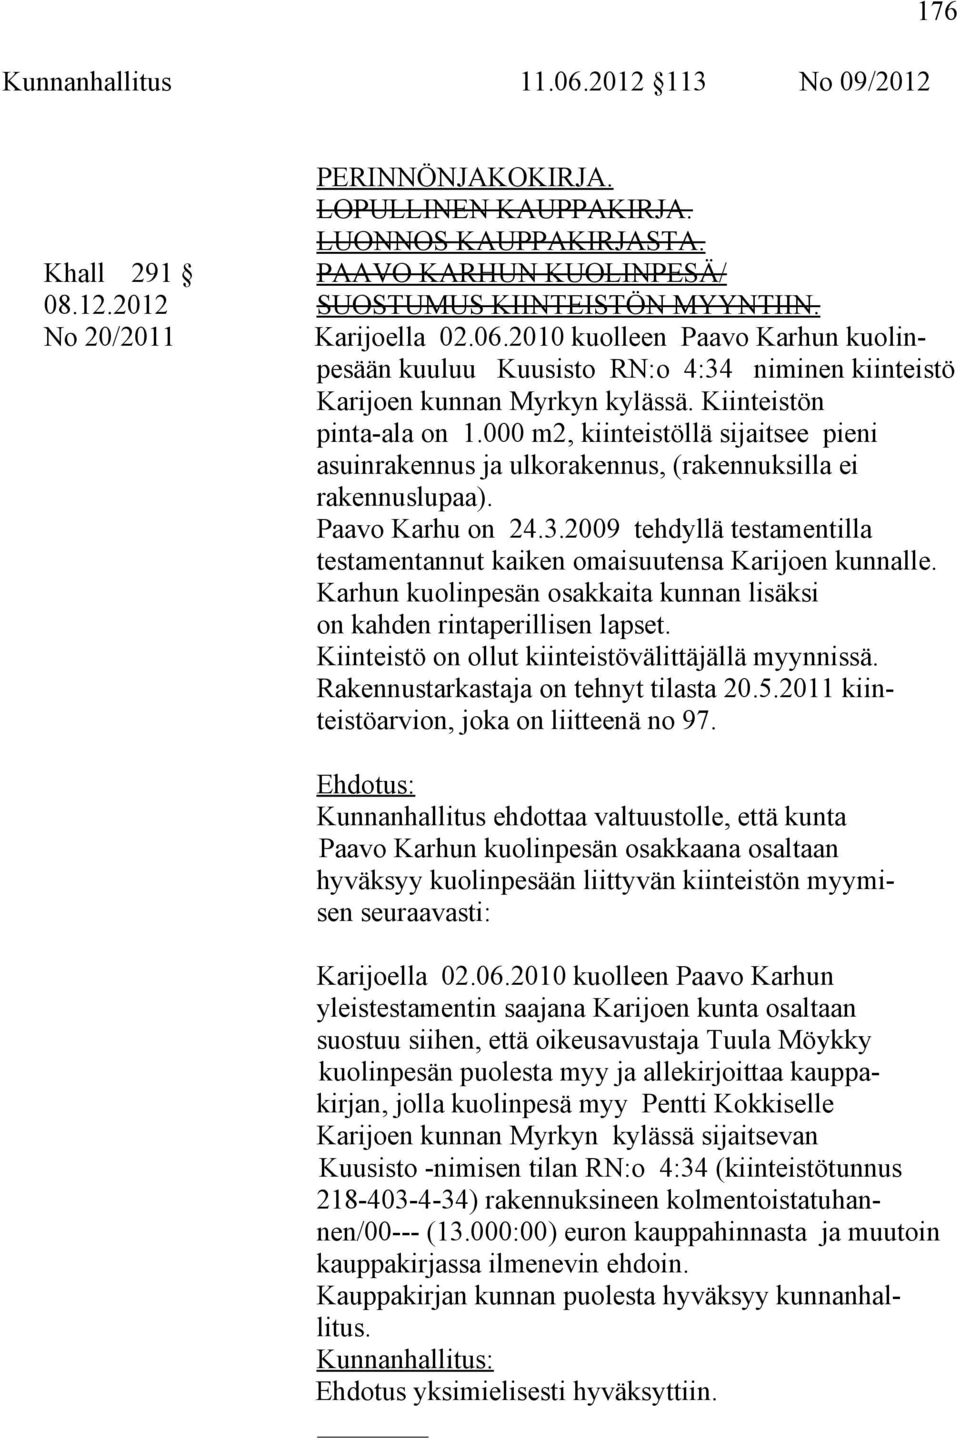 000 m2, kiinteistöllä sijaitsee pieni asuinrakennus ja ulkorakennus, (rakennuksilla ei rakennuslupaa). Paavo Karhu on 24.3.